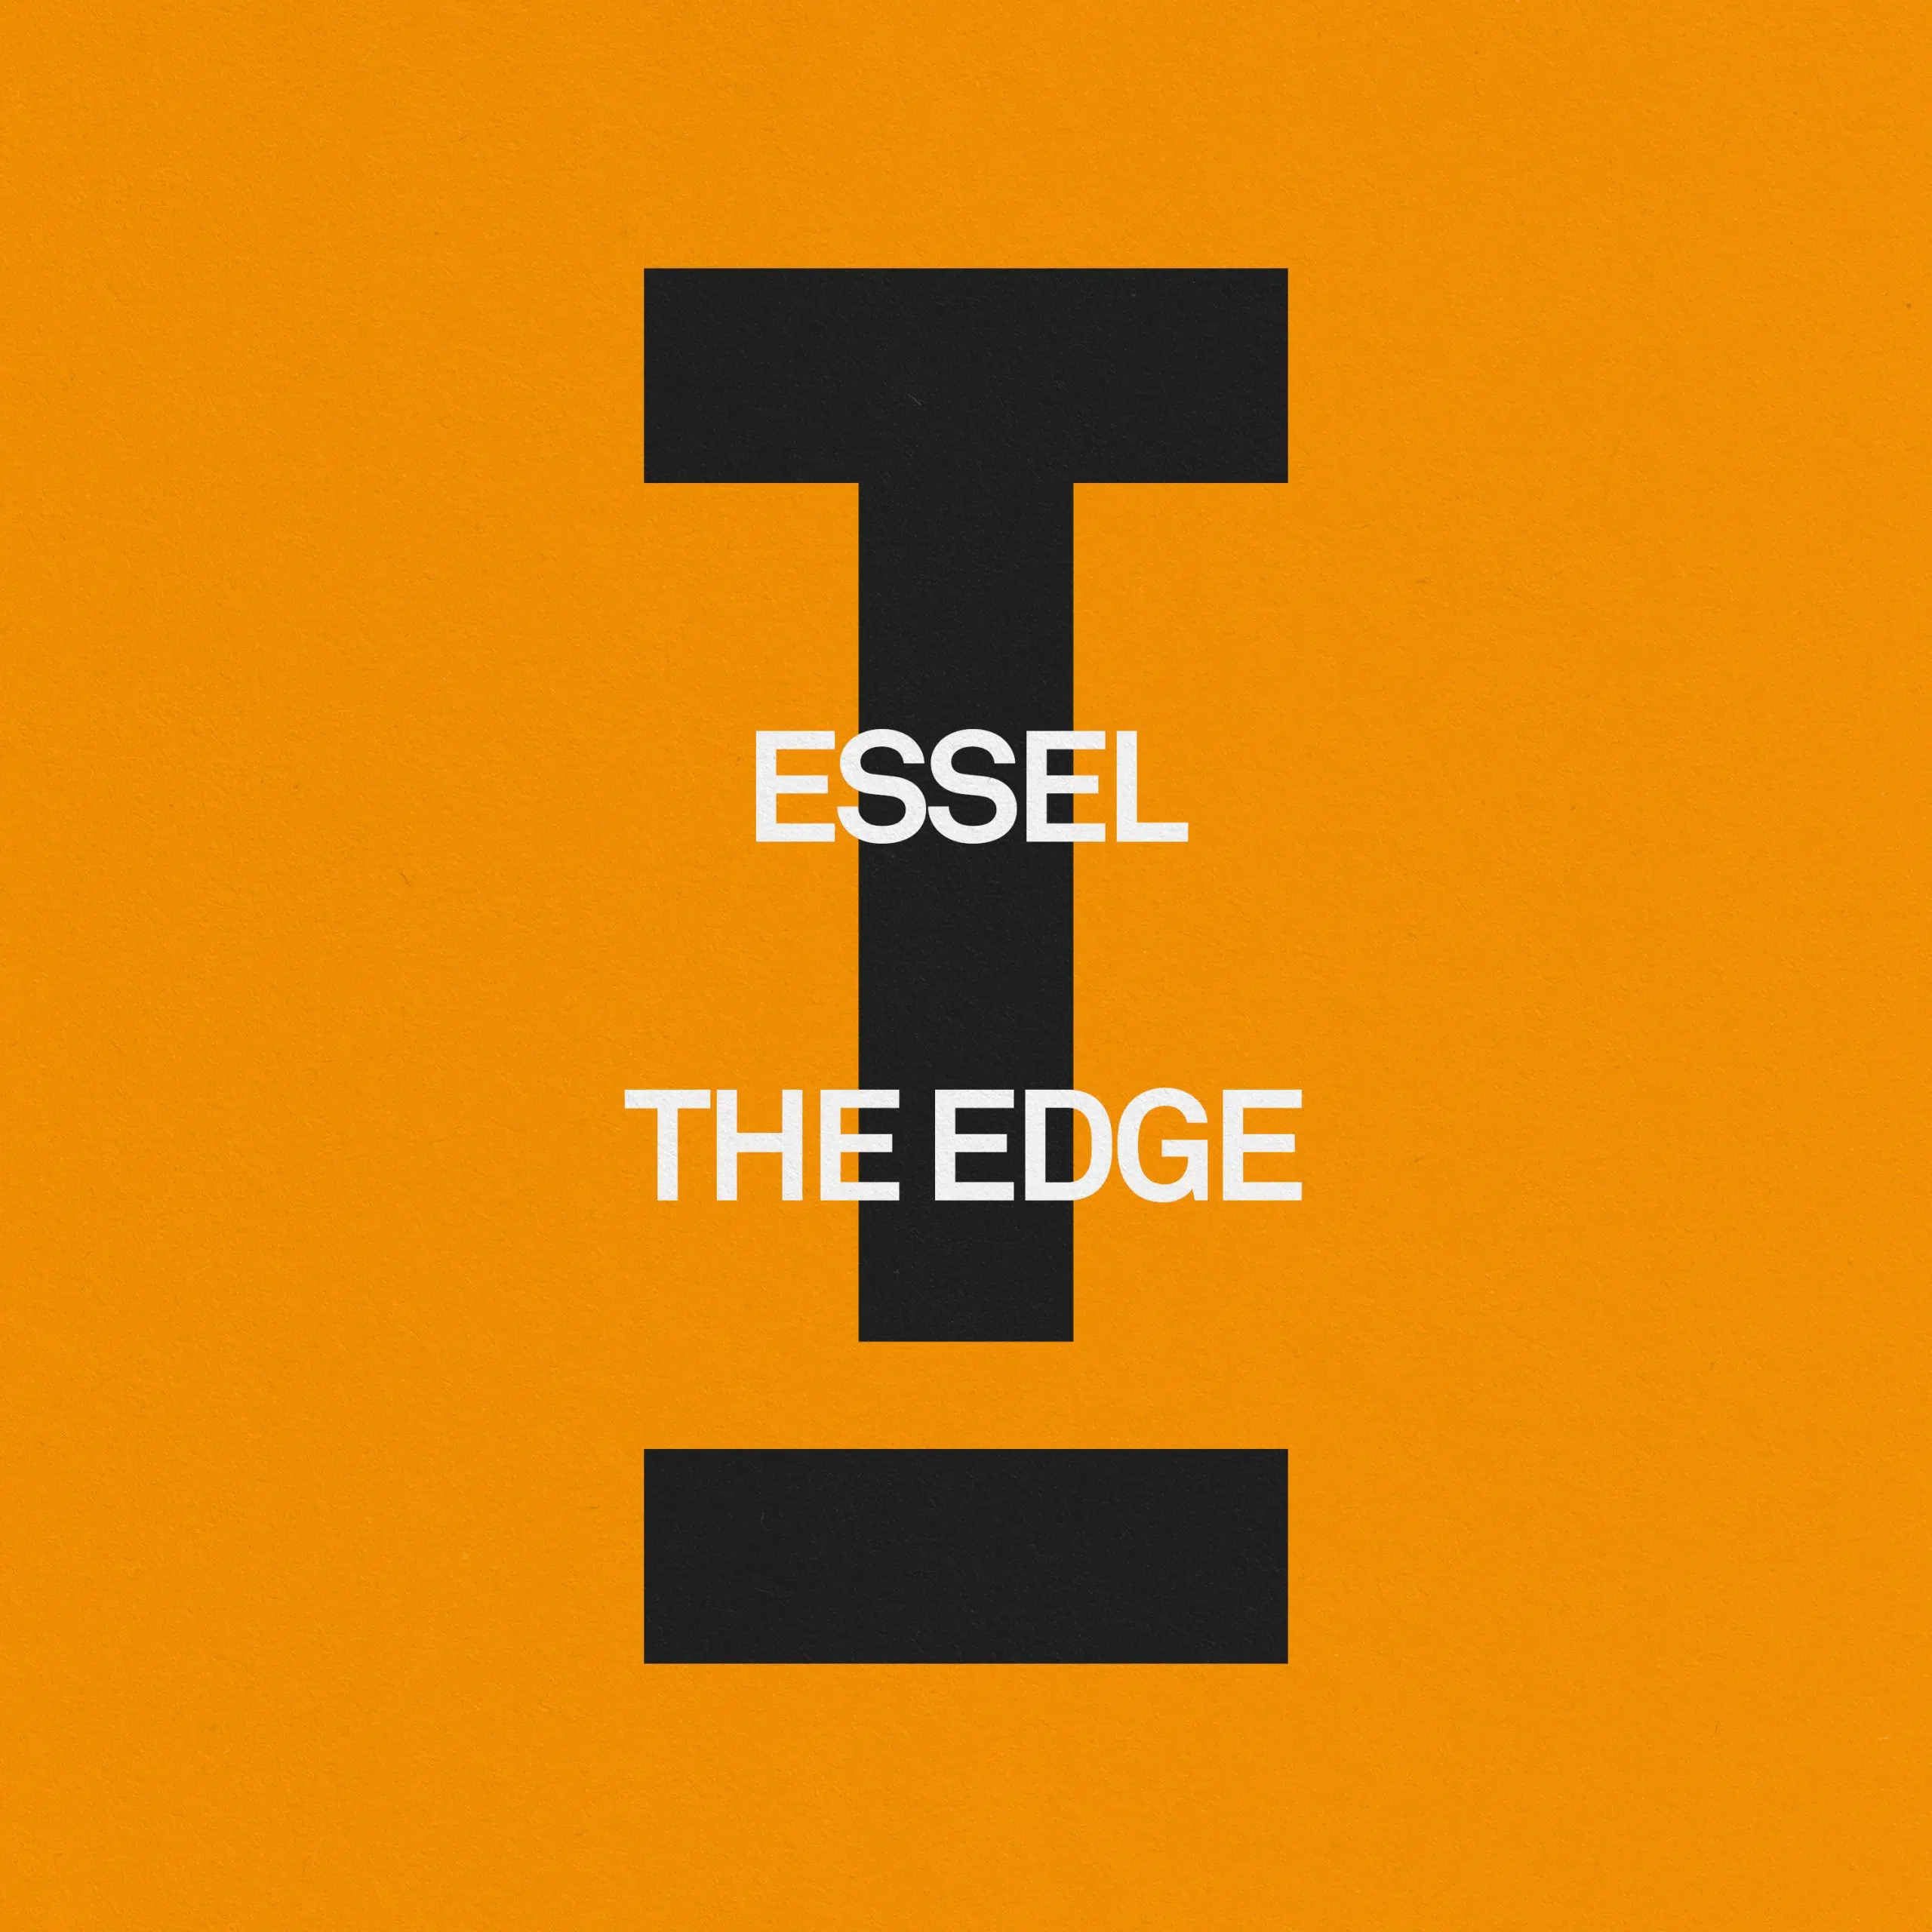 ESSEL “The Edge”